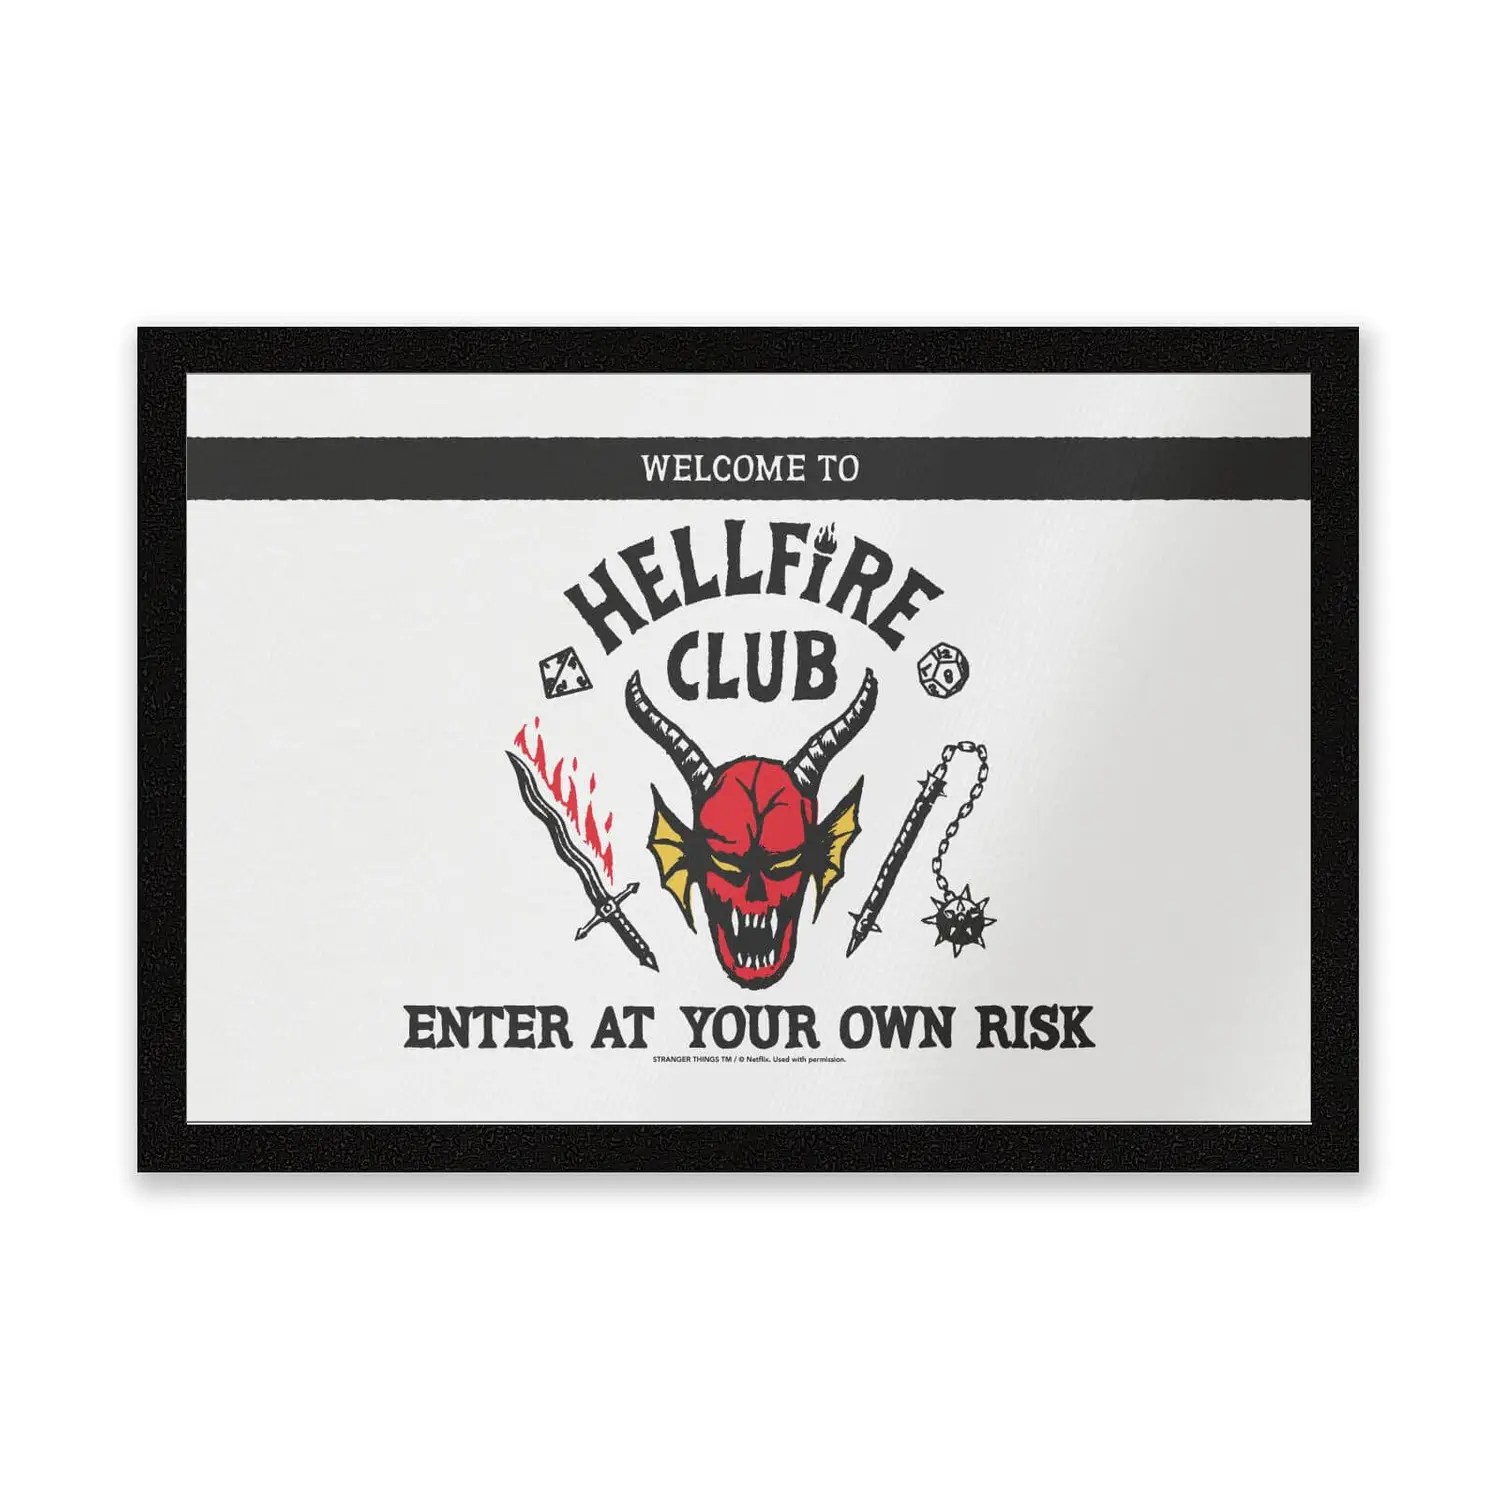 A Hellfire Club welcome mat.